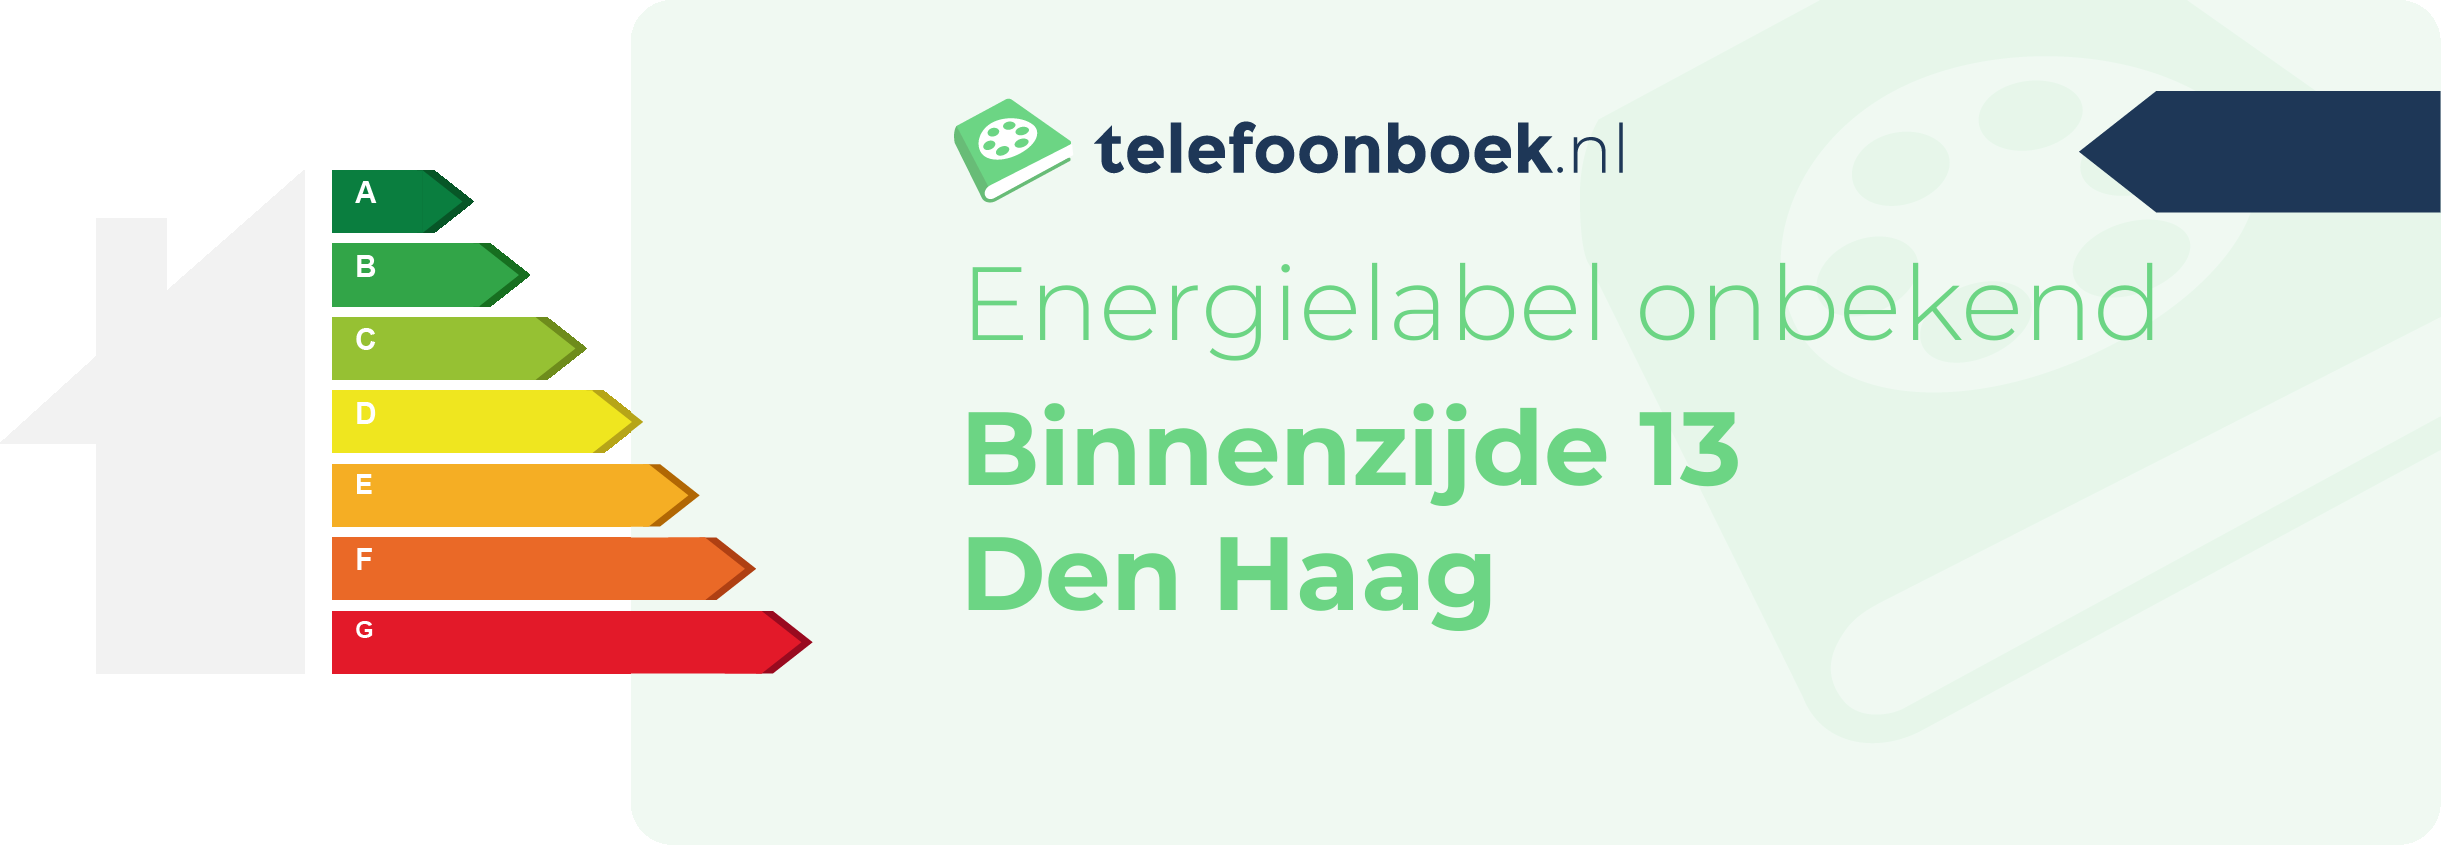 Energielabel Binnenzijde 13 Den Haag